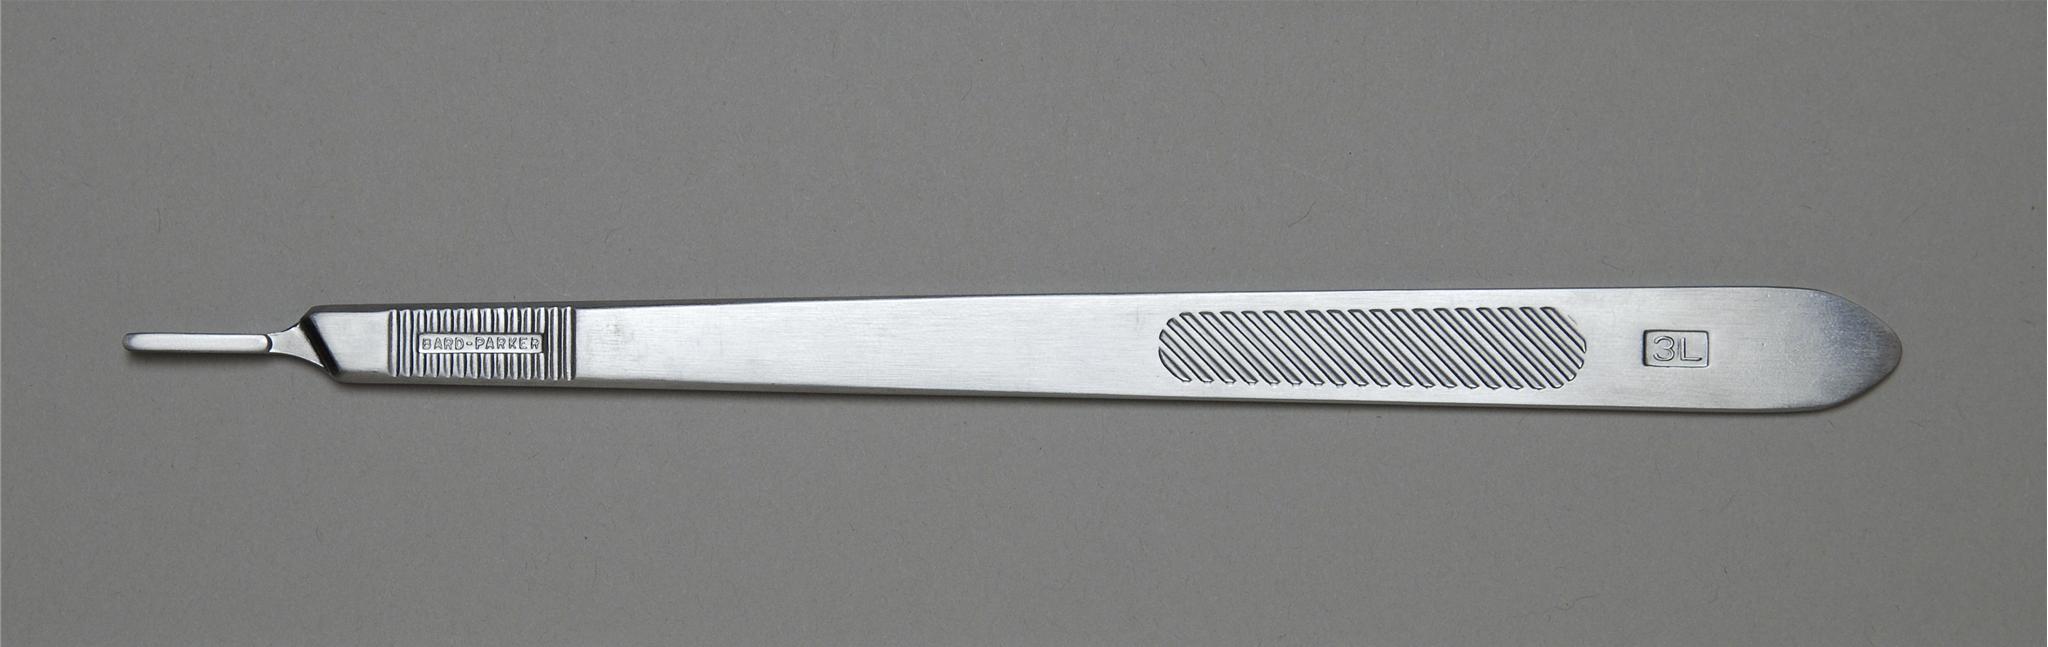 Aspen Bard-Parker Surgical Blade Handles Case 371031 By Aspen Sur